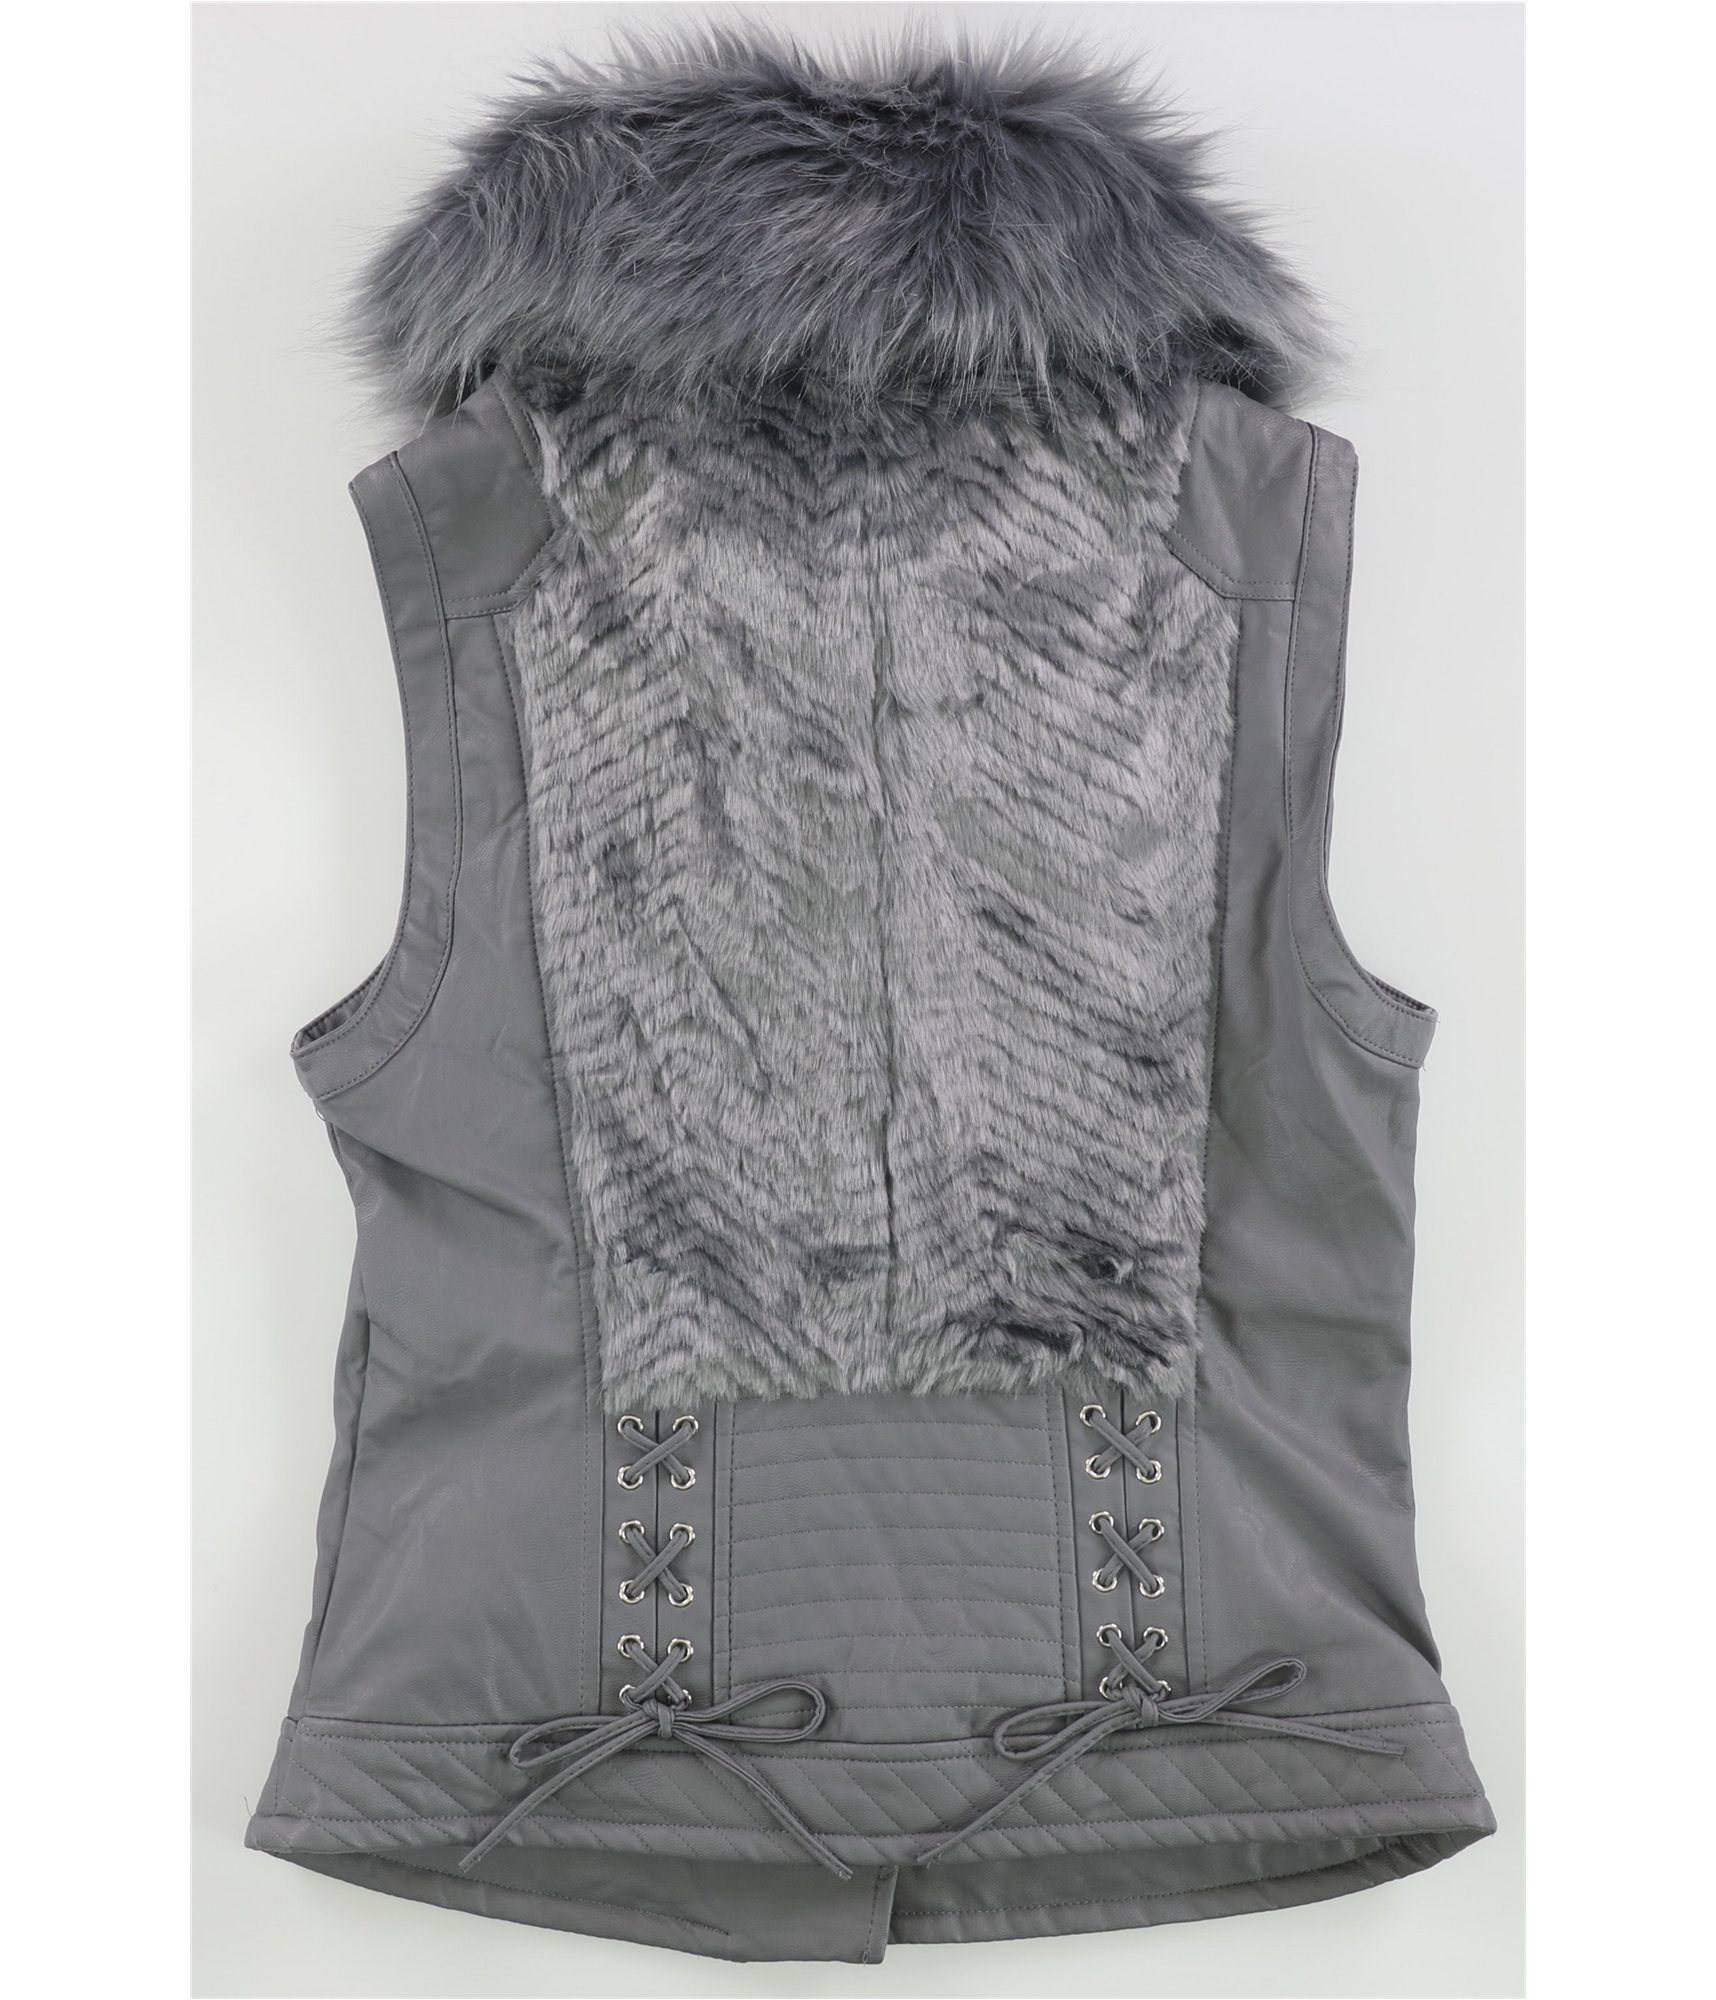 Guess Womens Posh Faux Leather & Faux Fur Vest | eBay